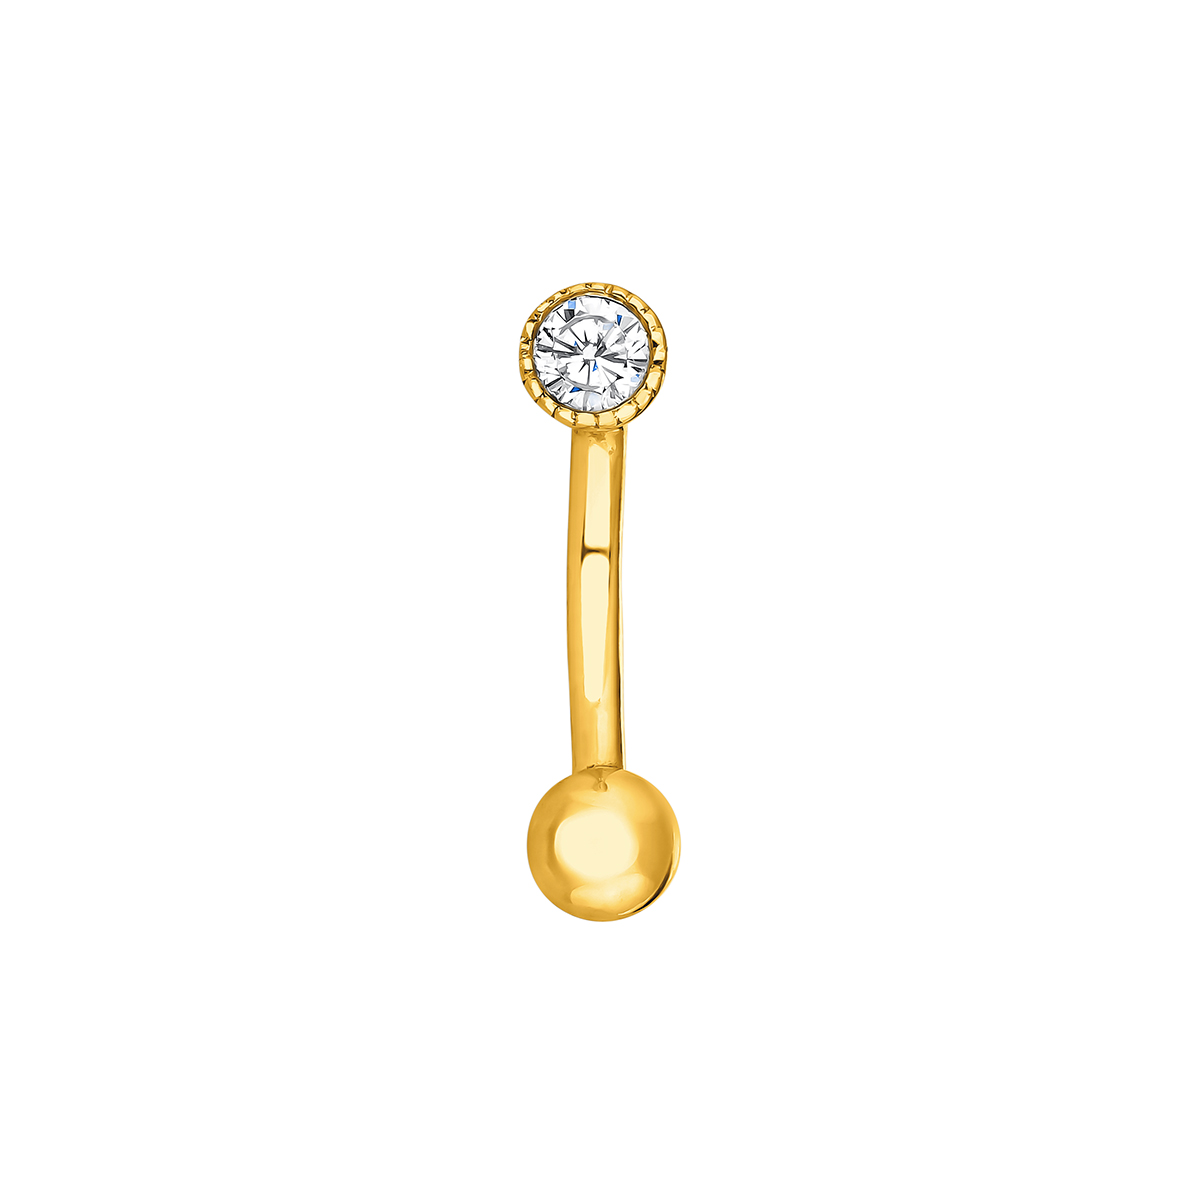 Piercing rook de oro amarillo de 18K con diamante